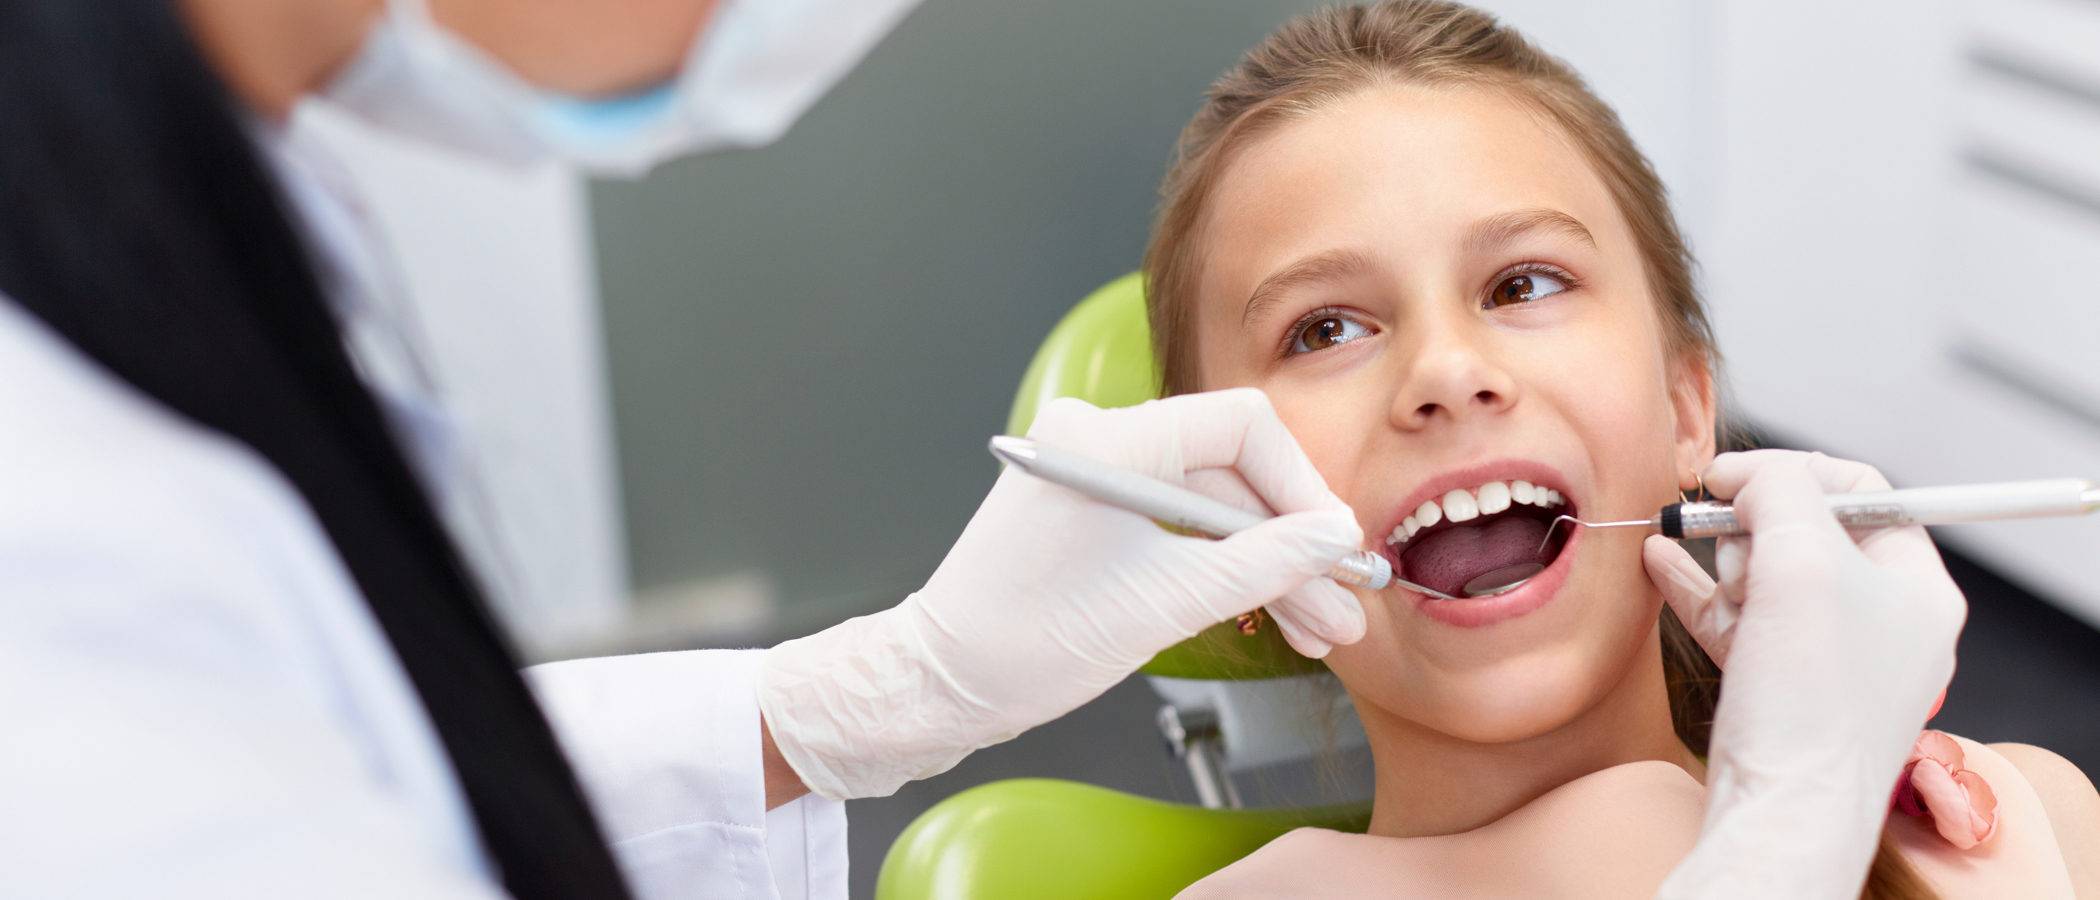 La primera visita al dentista, ¿cuándo y cómo debe ser?